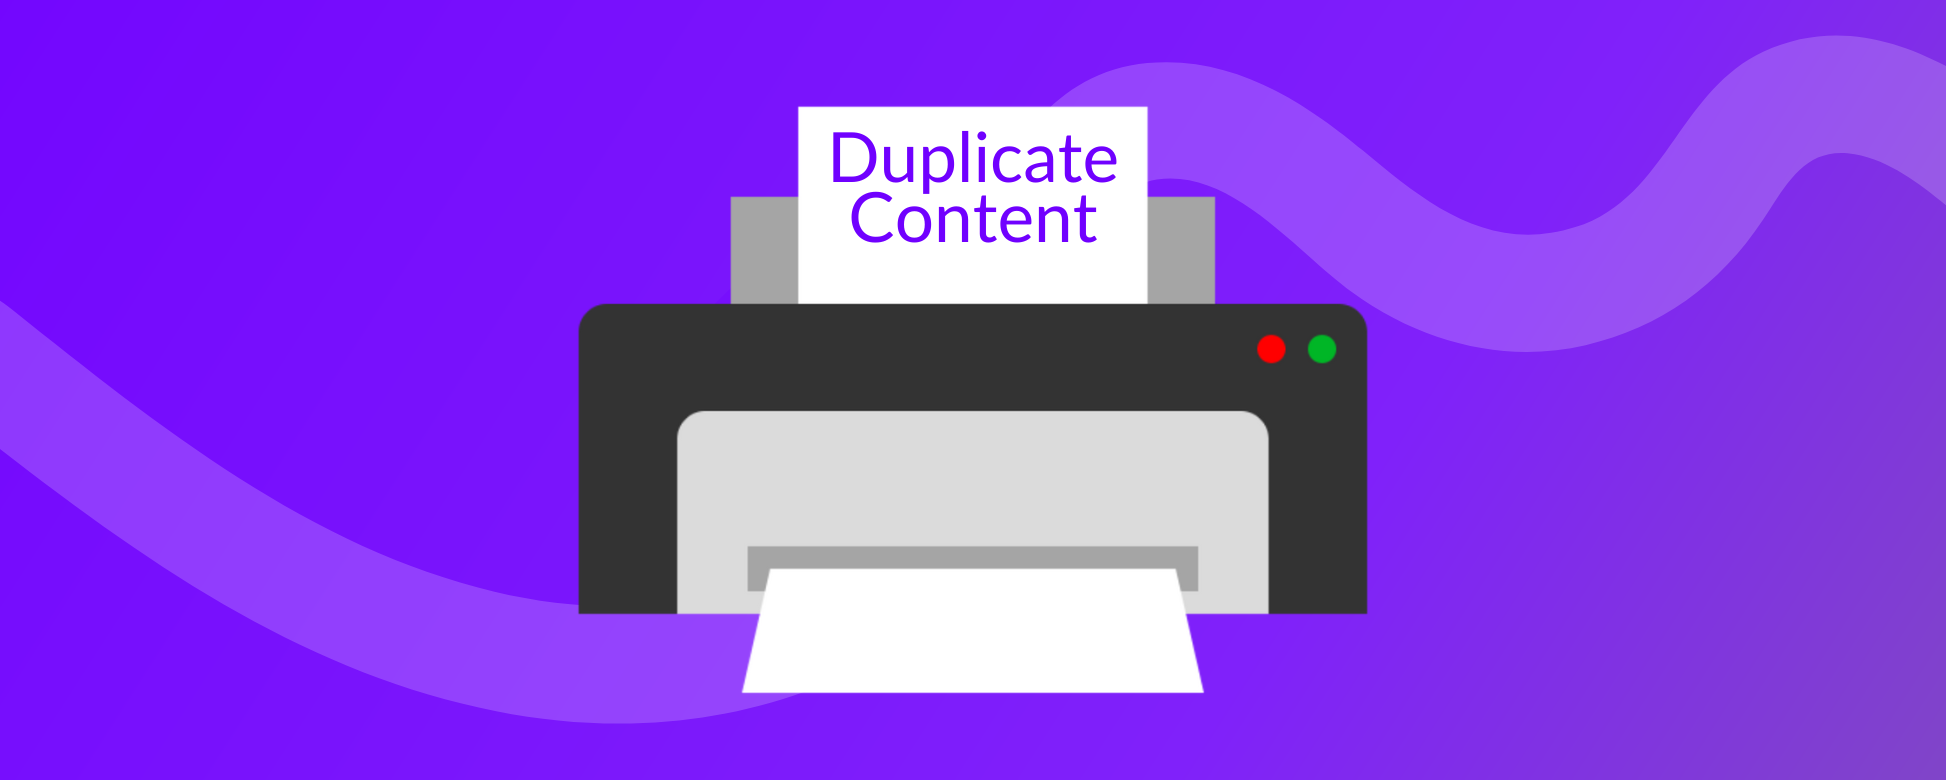 Duplicate Content Warning